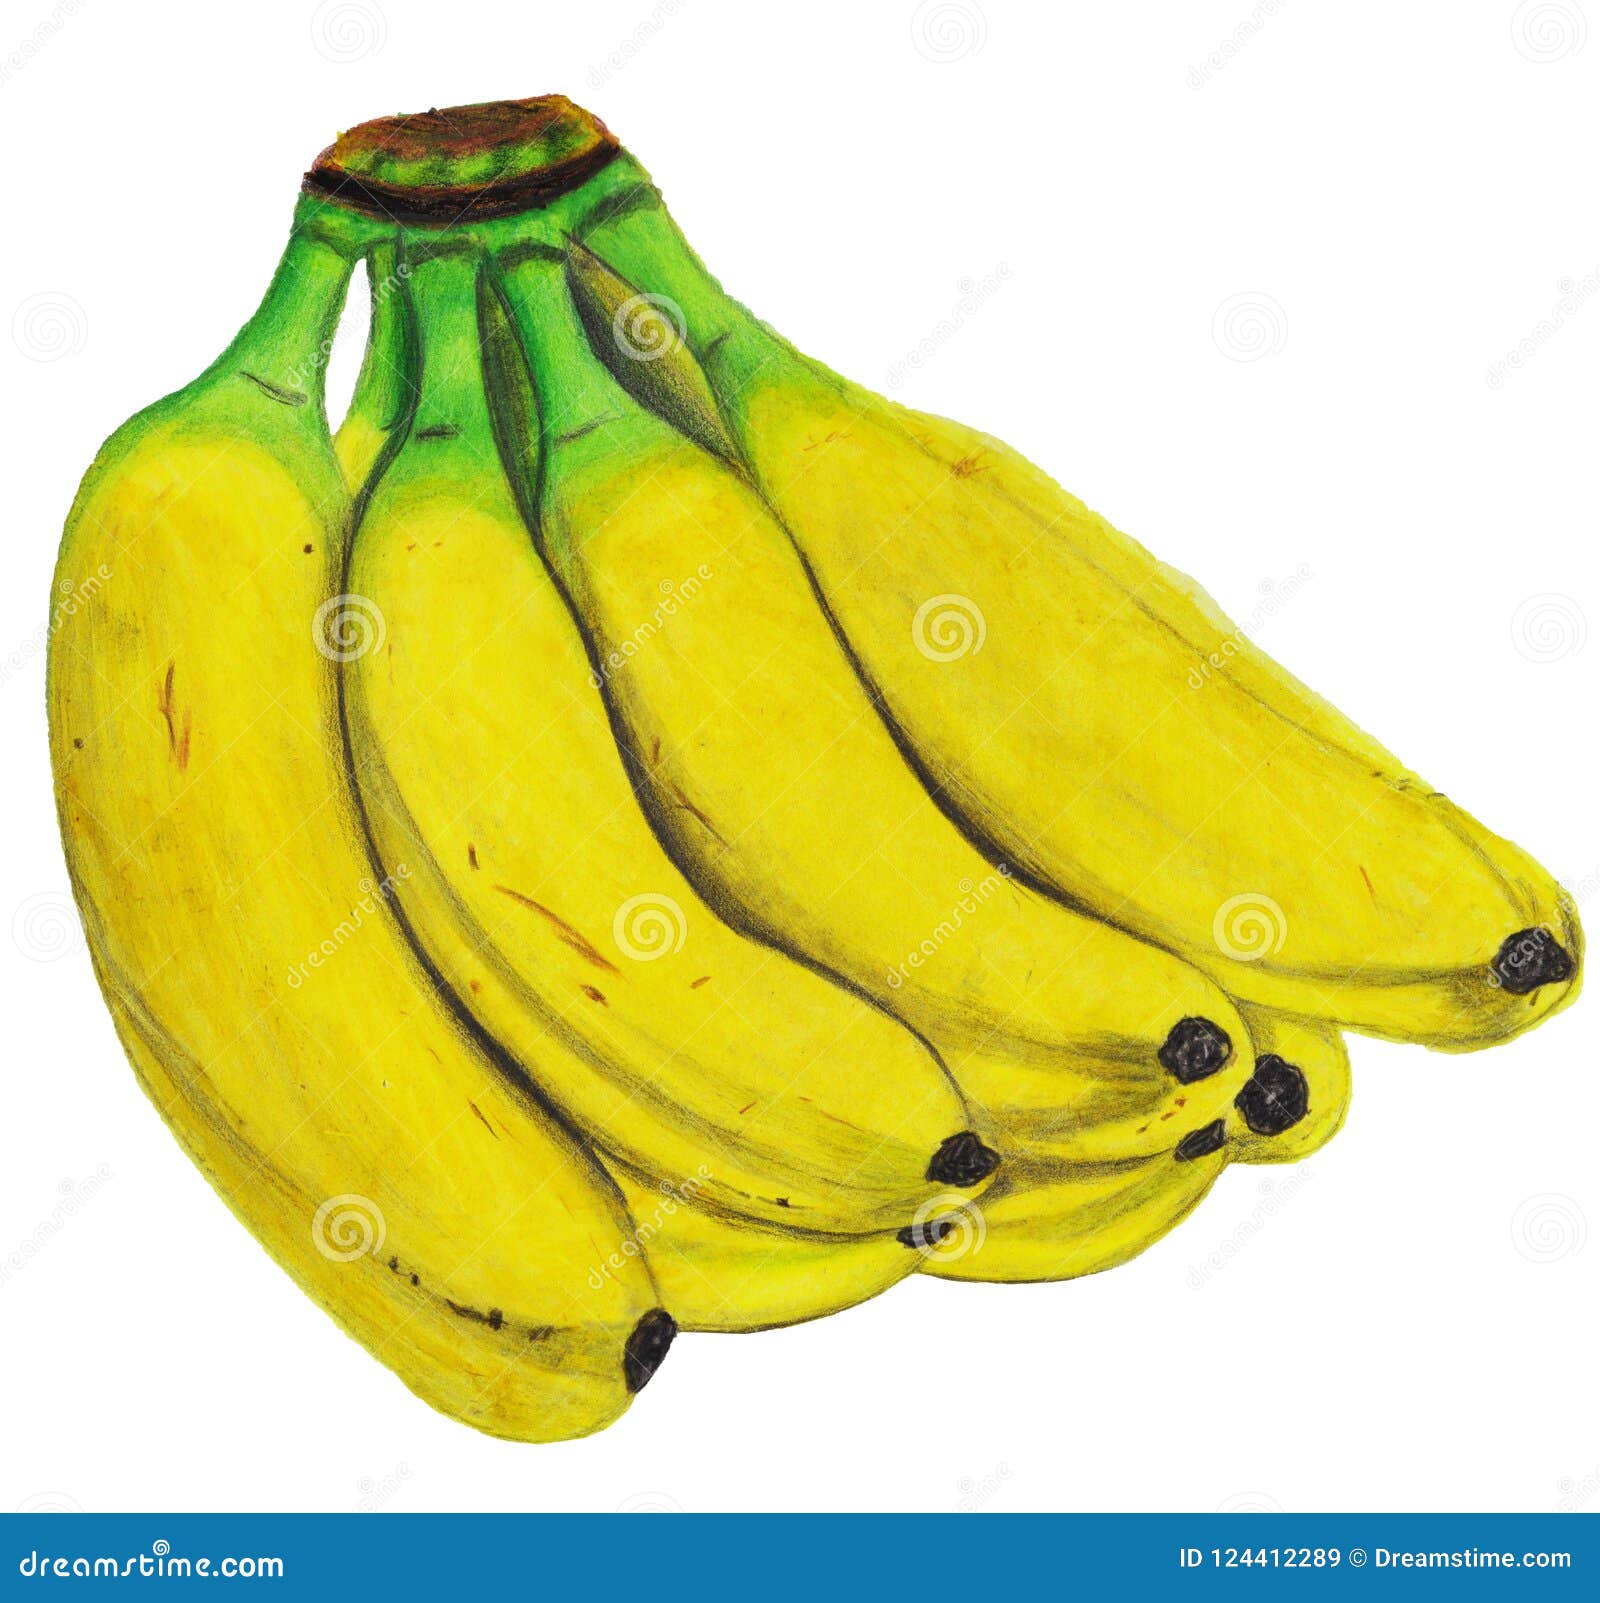 banana colouring draw 🍌🍌🍌banana colouring video //🍌 banana drawing for  kids | Art easel & pencil, banana drawing, color pencil, fruit drawing, how  to draw fruit, realistic banana drawing in color pencil,